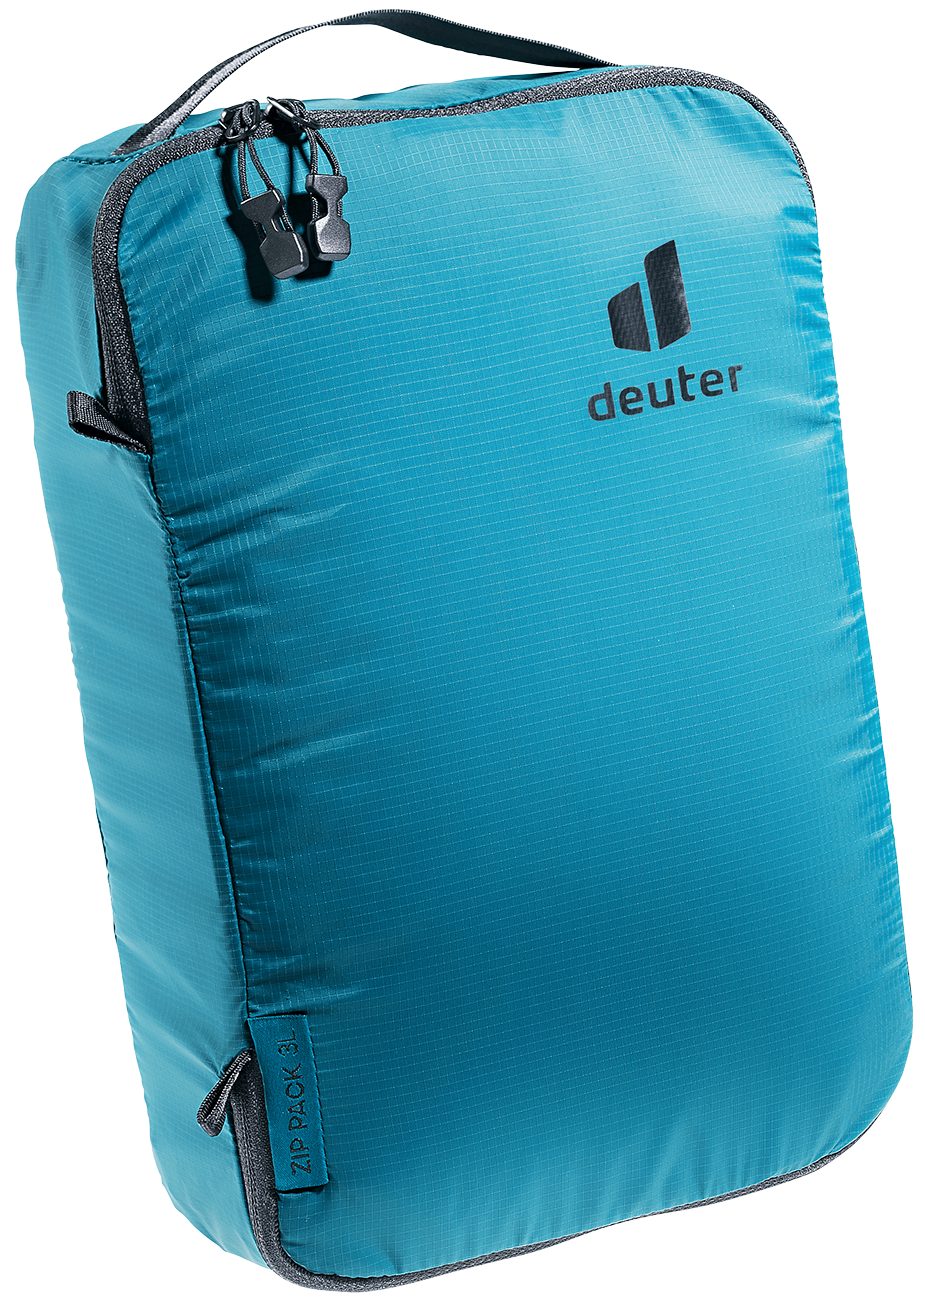 Trekkingrucksack Deuter - Pack Zip deuter 3 Packsack